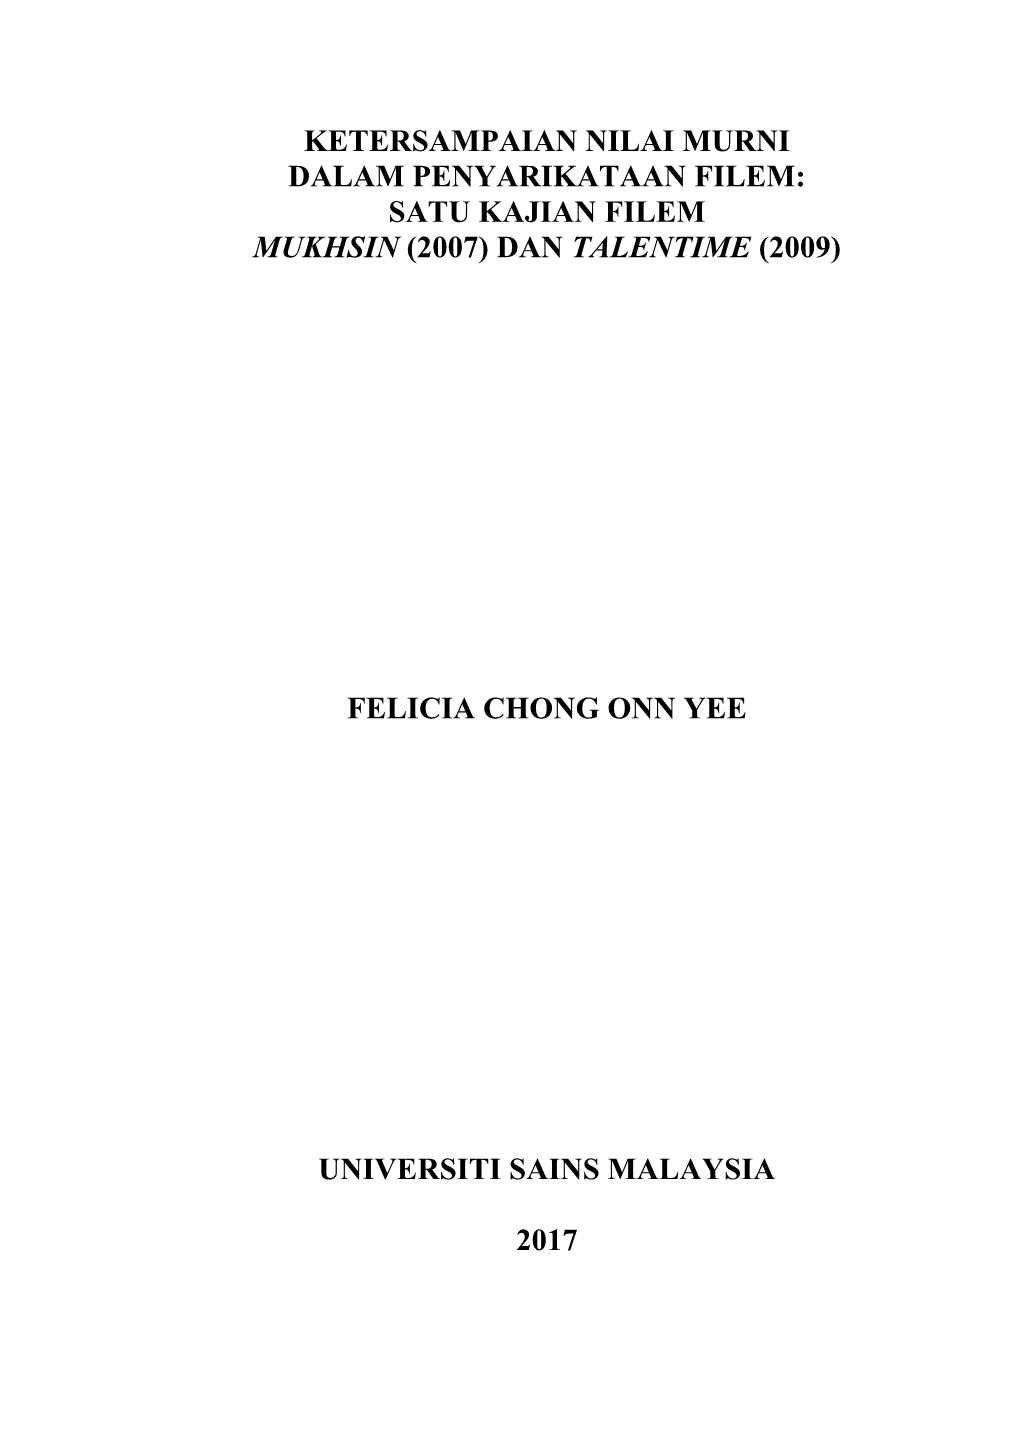 Ketersampaian Nilai Murni Dalam Penyarikataan Filem: Satu Kajian Filem Mukhsin (2007) Dan Talentime (2009)